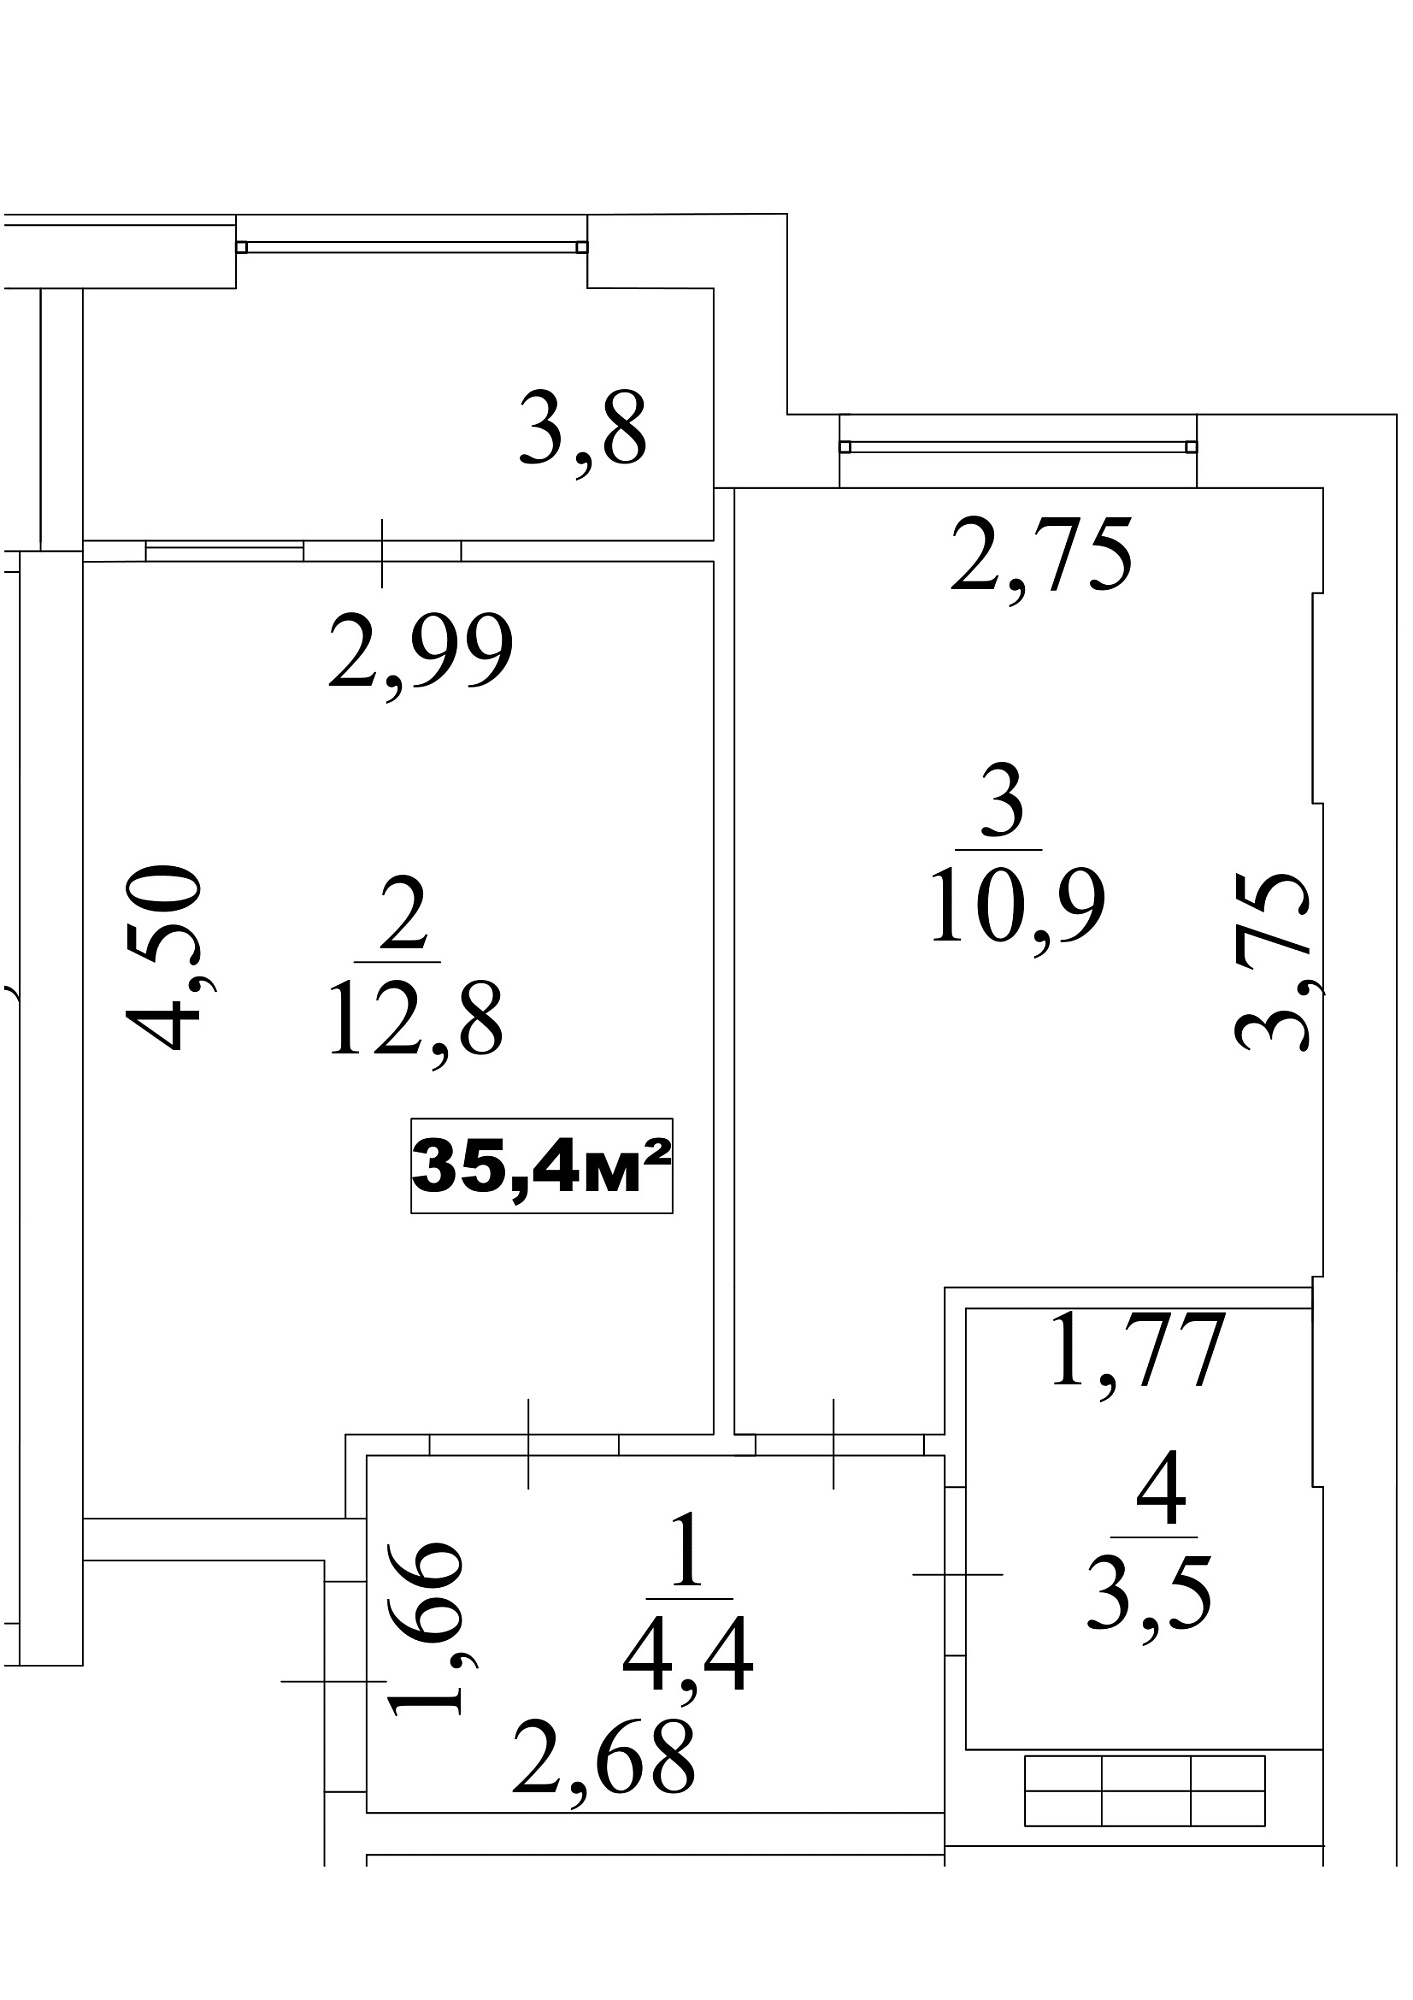 Планування 1-к квартира площею 35.4м2, AB-10-01/0007б.